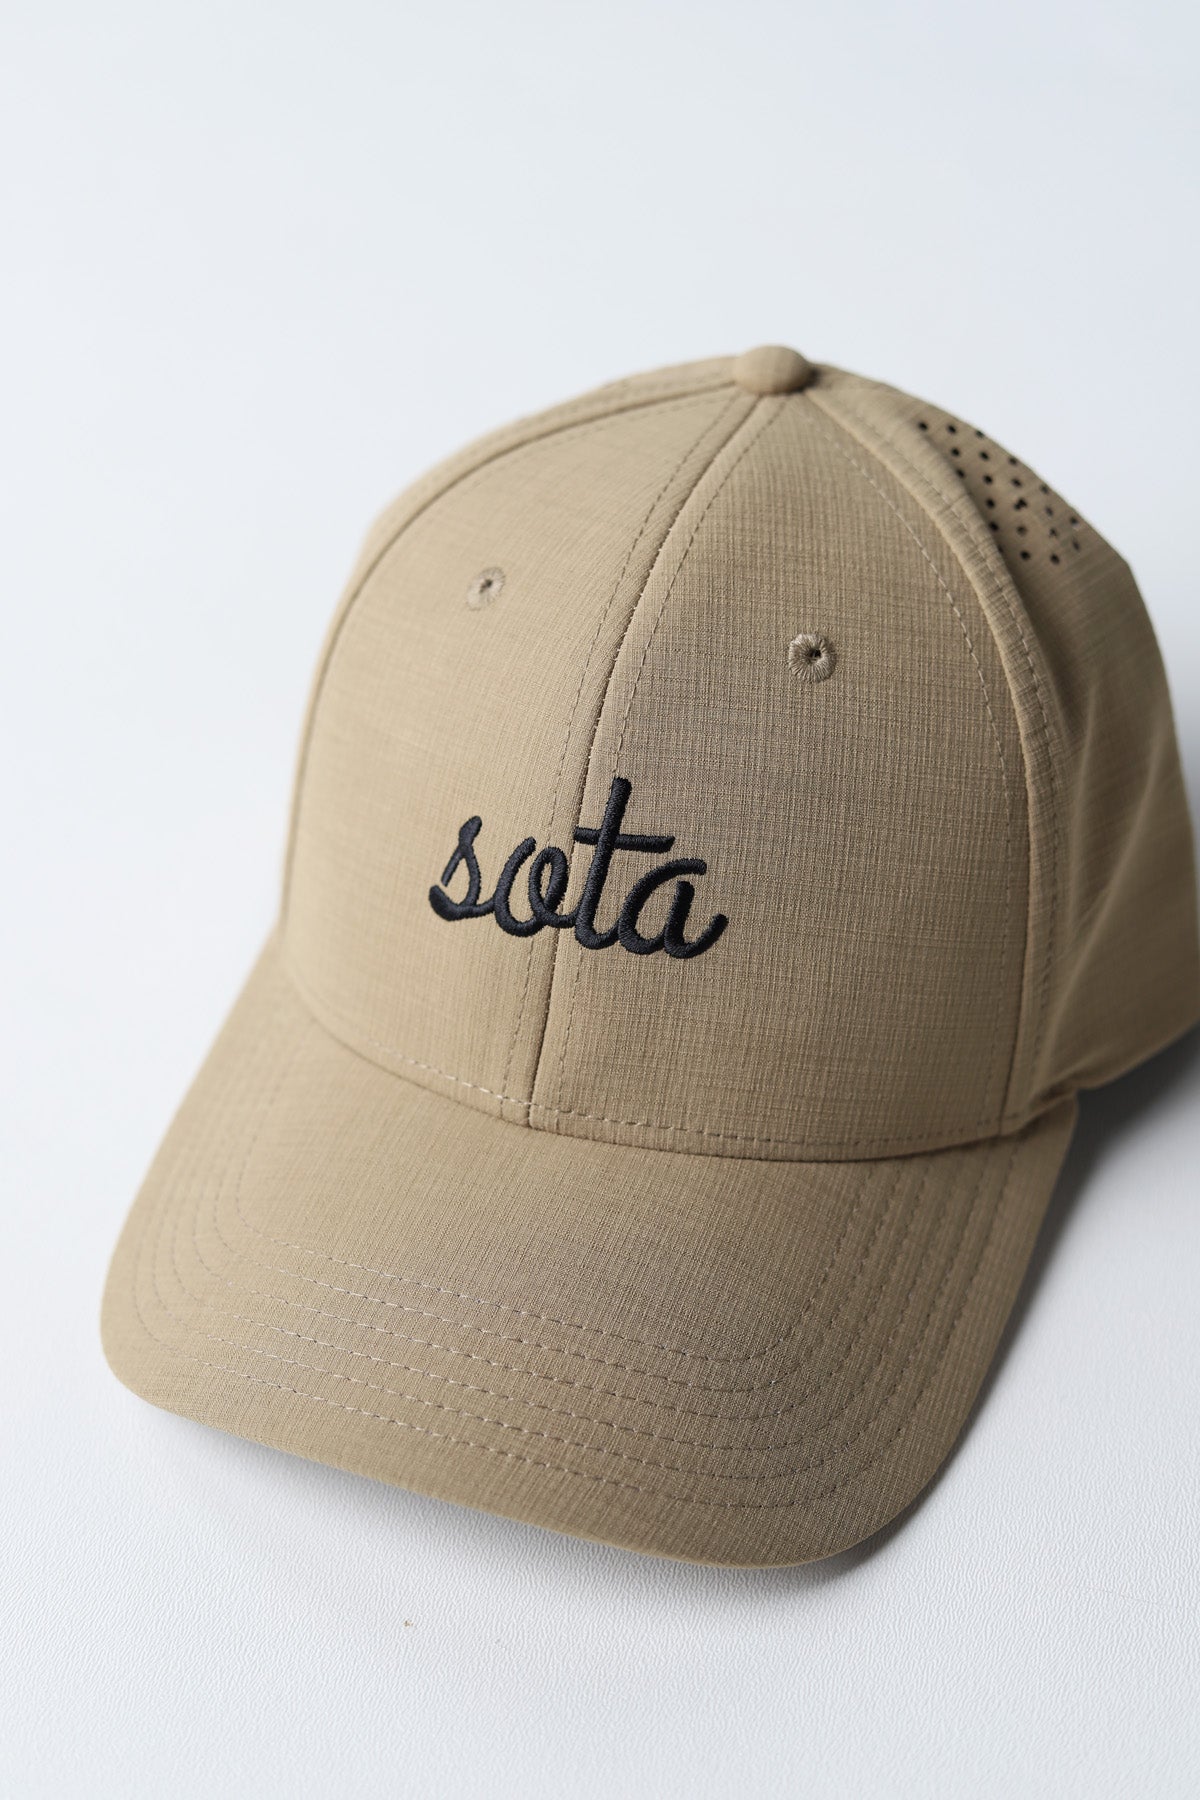 Mojave Dri-Fit Hat - Khaki/Black - Sota Clothing